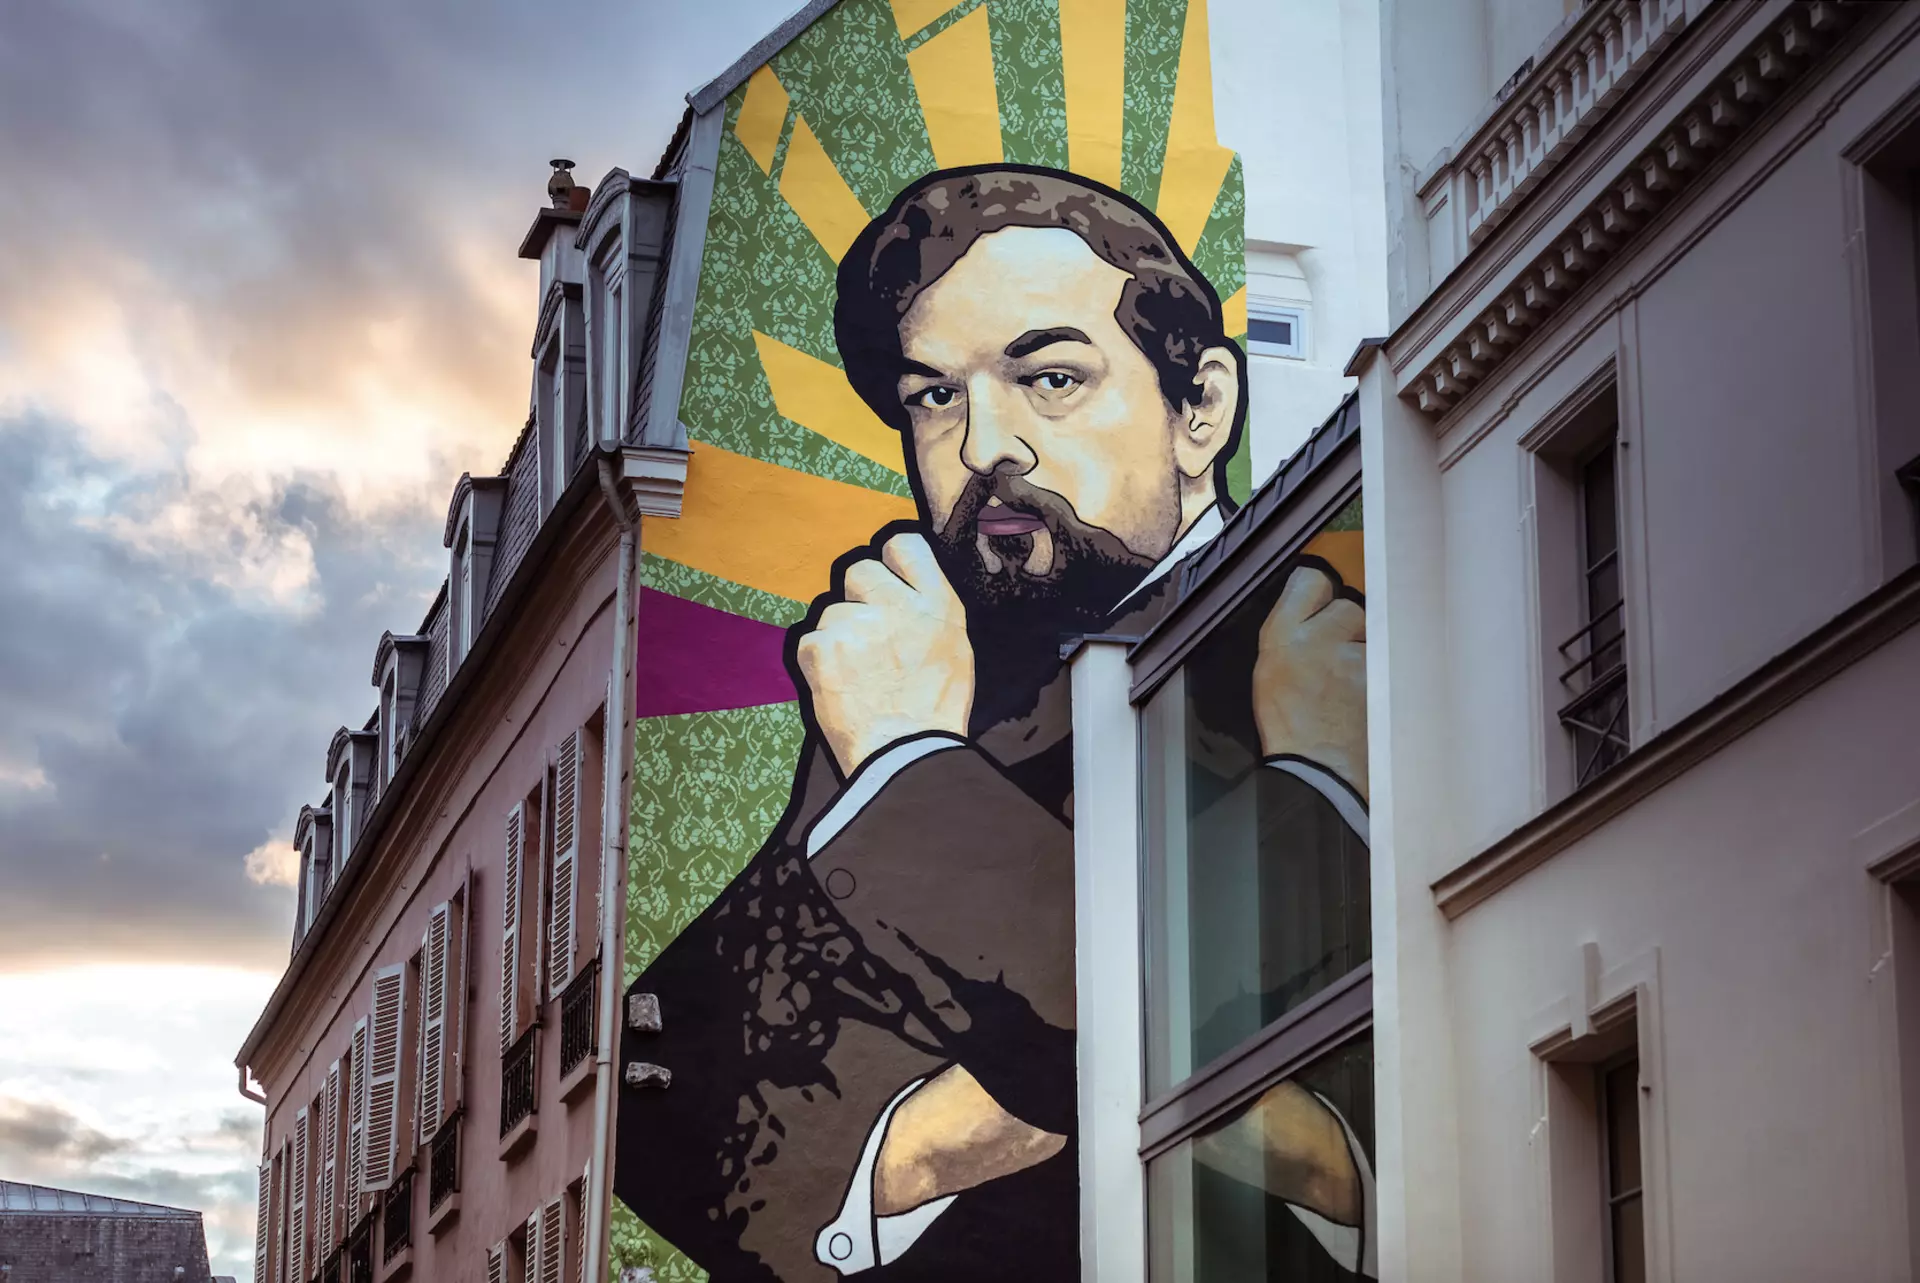 Oeuvre de Street Art à Saint-Germain-en-Laye